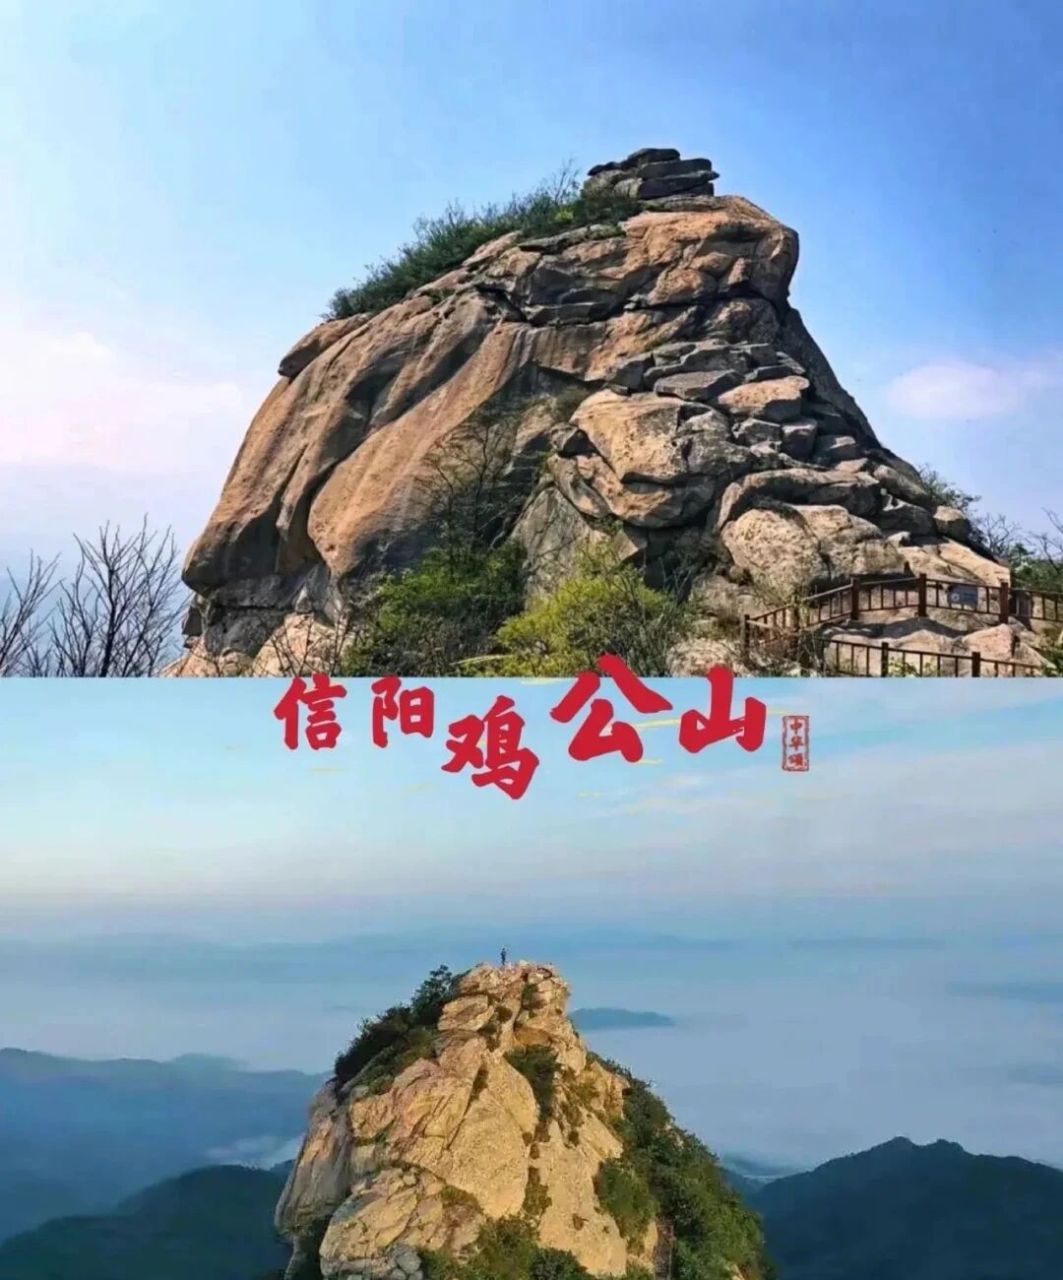 信阳灵山风景区官网图片